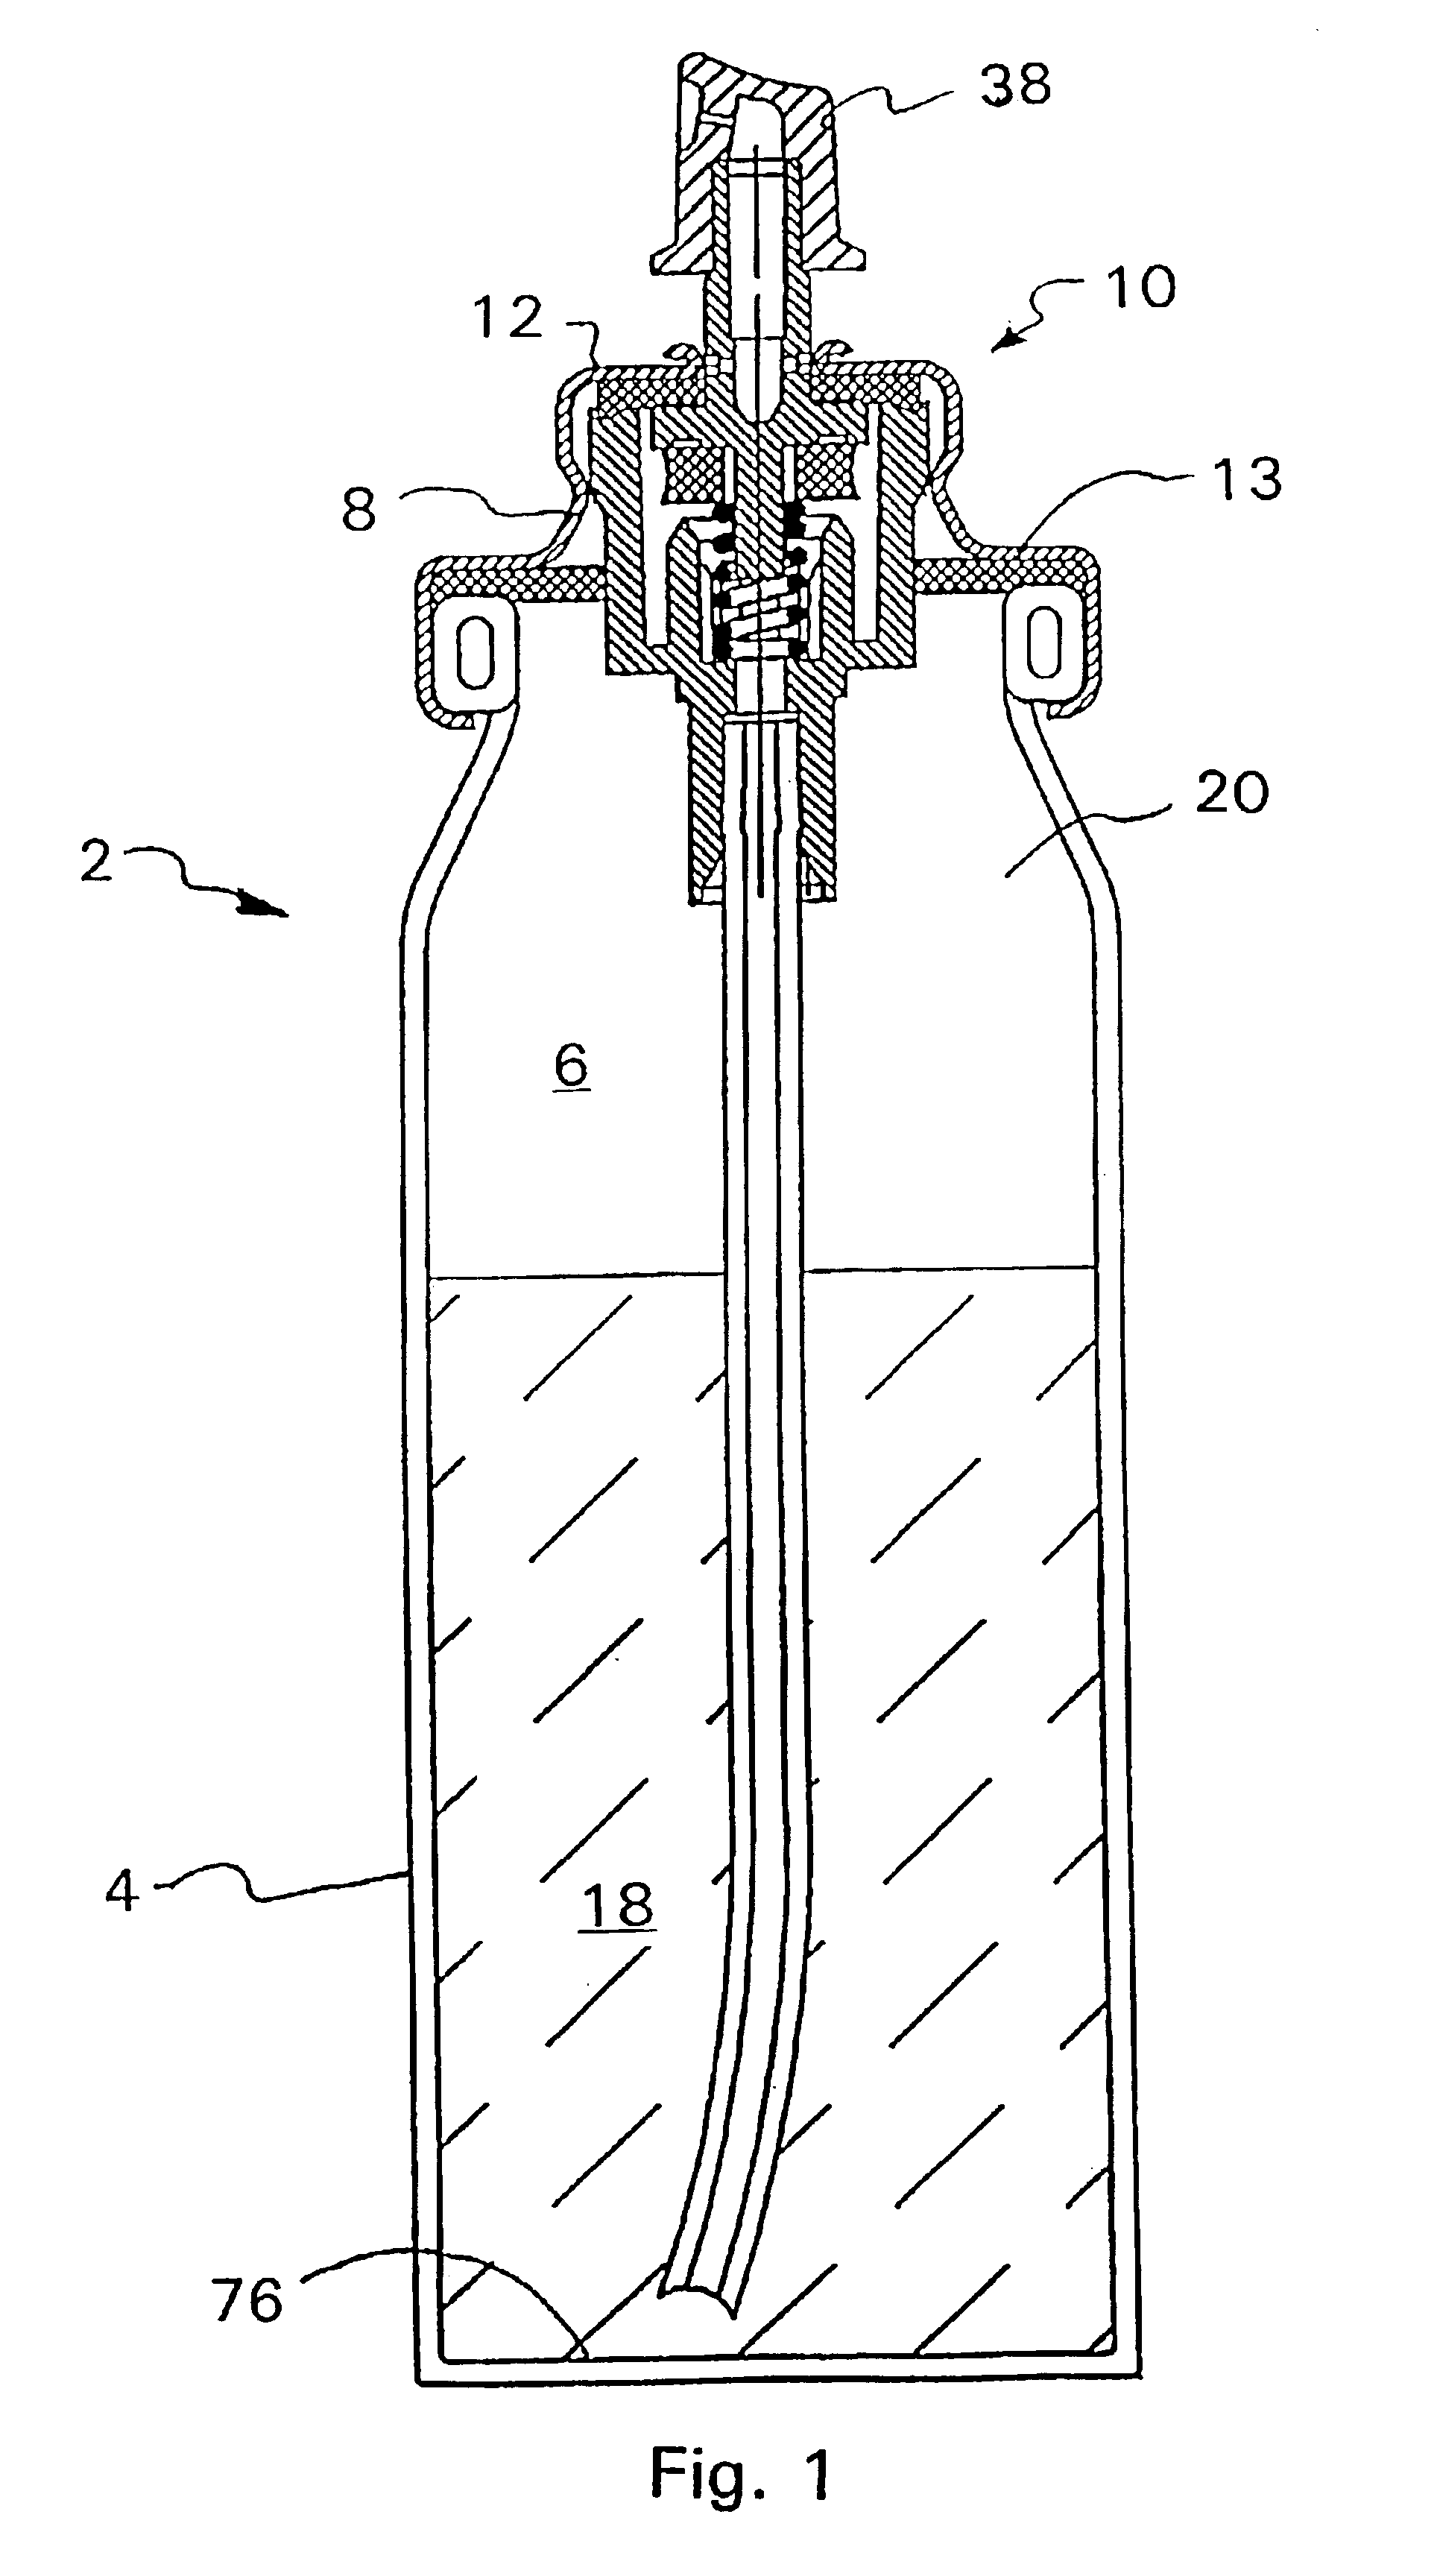 Metering valve for aerosol container